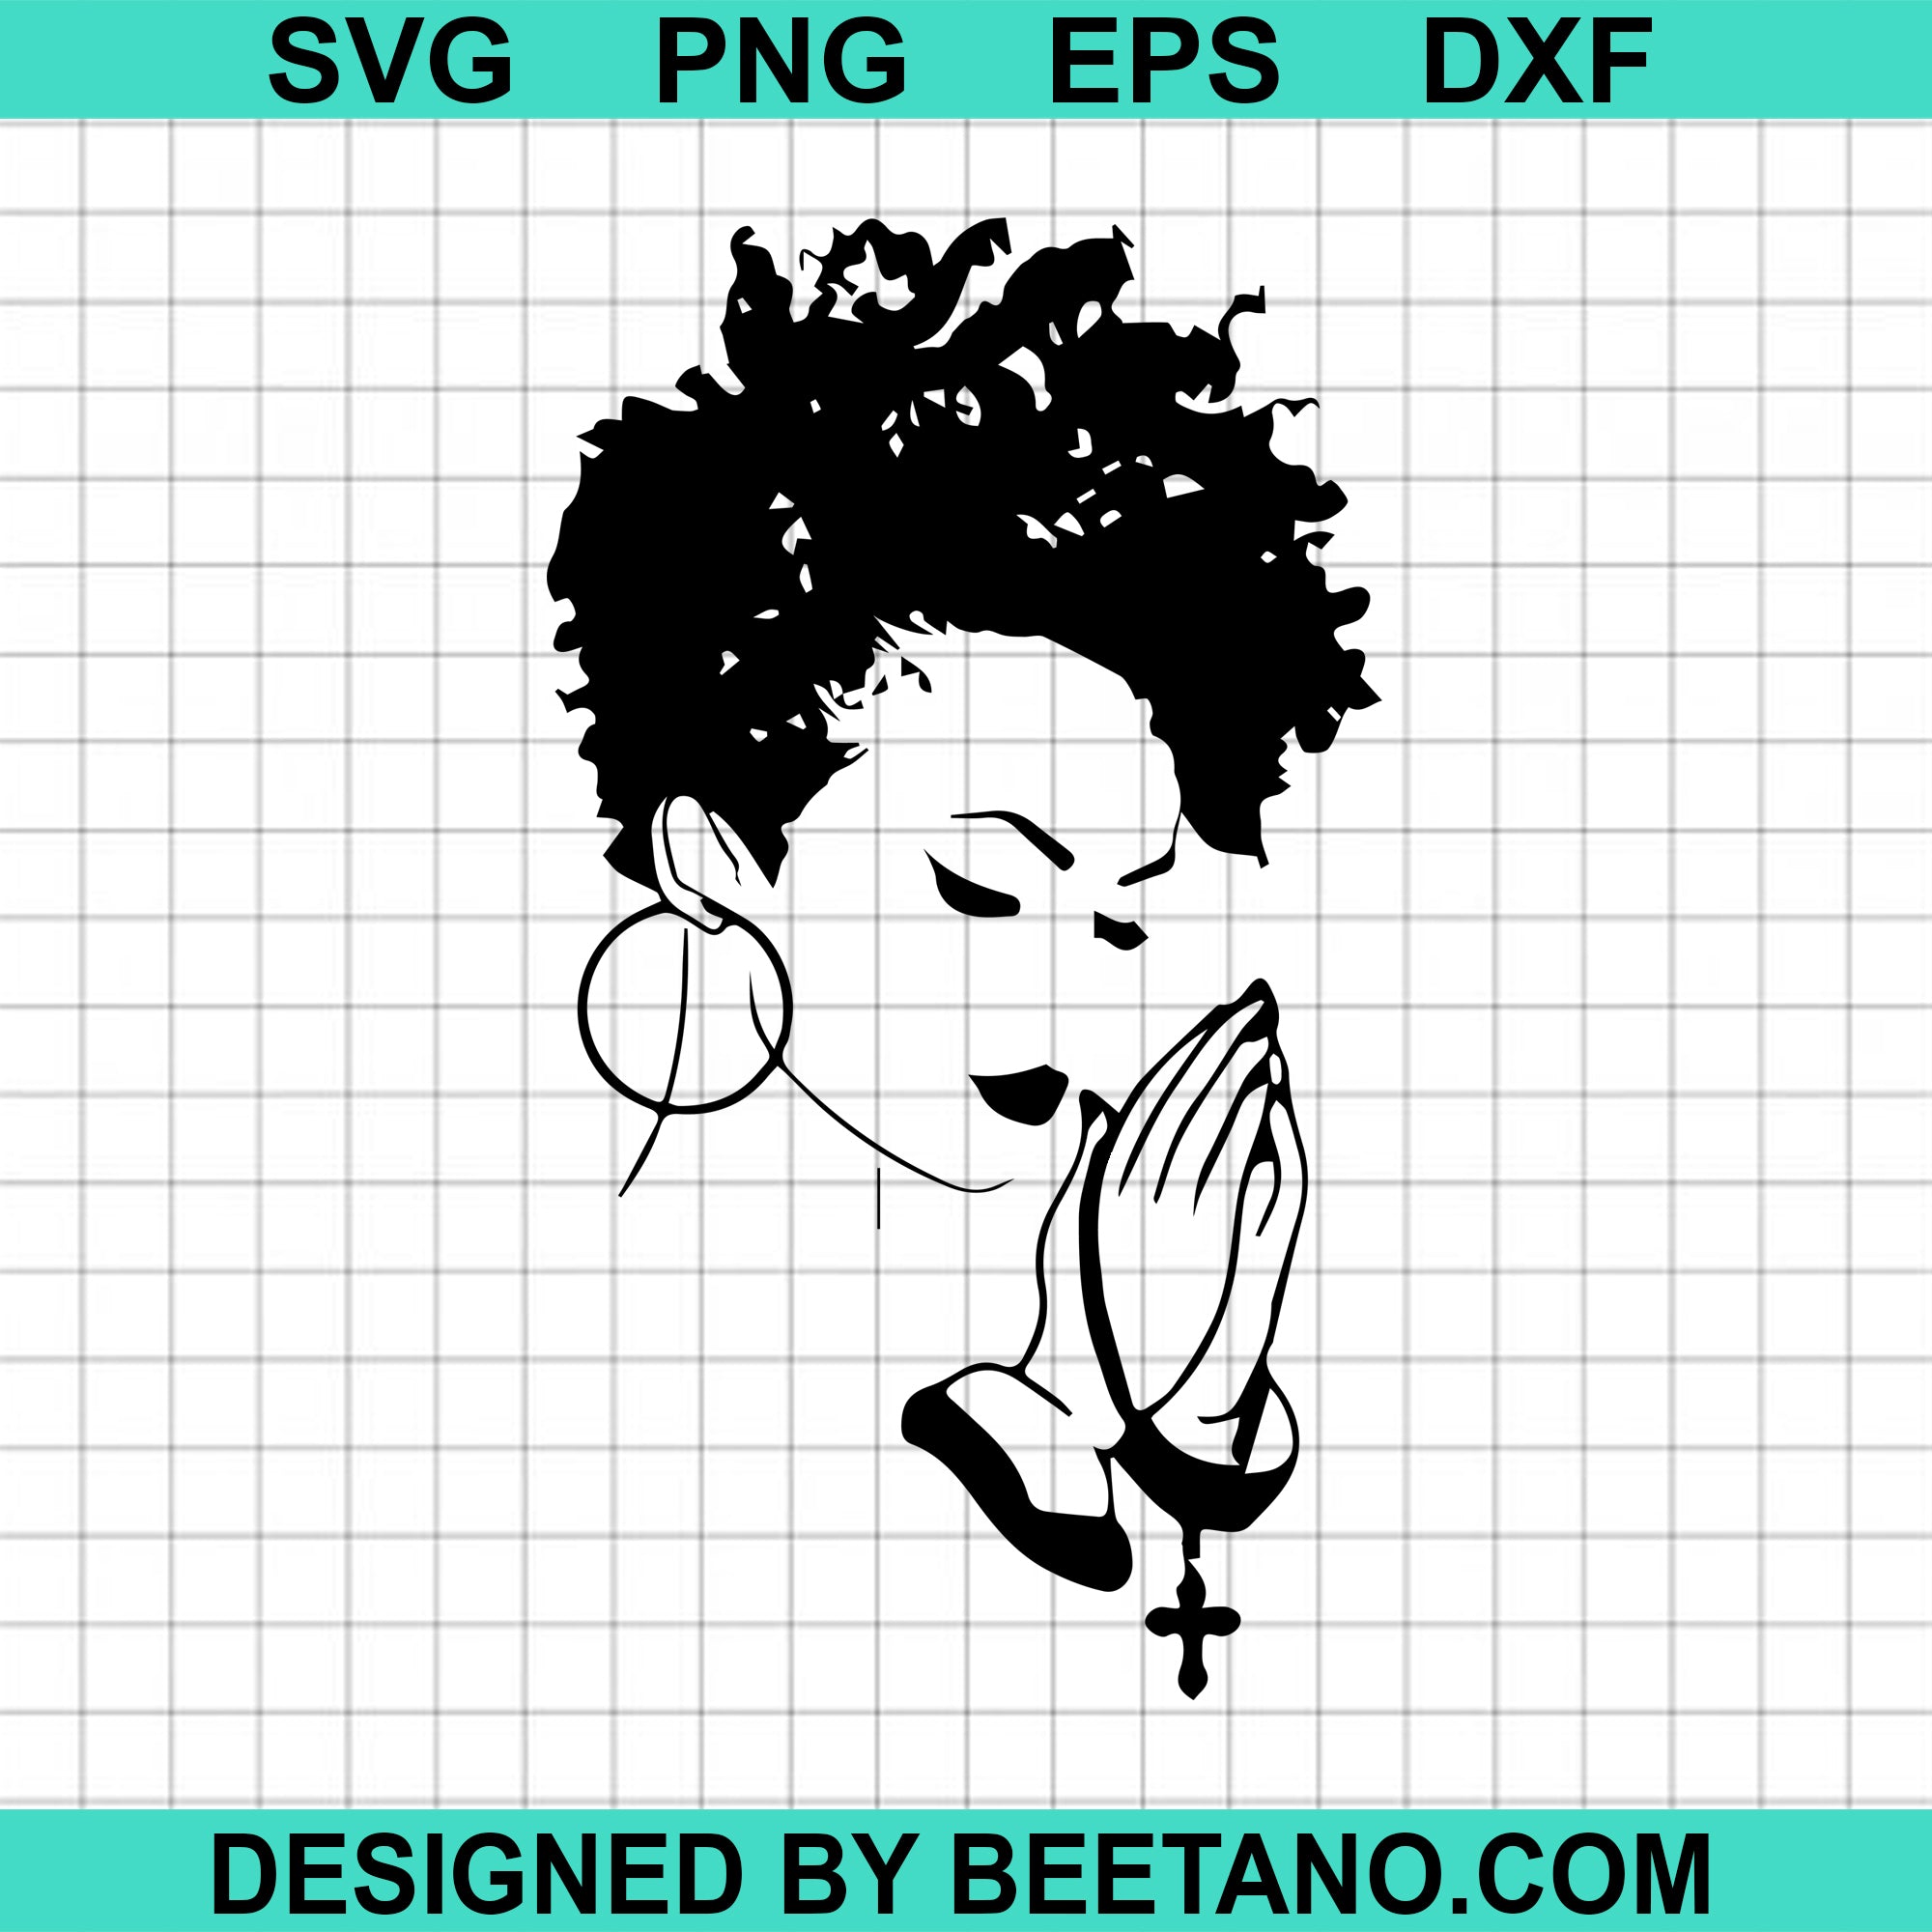 Free Free 216 Svg Black Woman Praying Images Free SVG PNG EPS DXF File